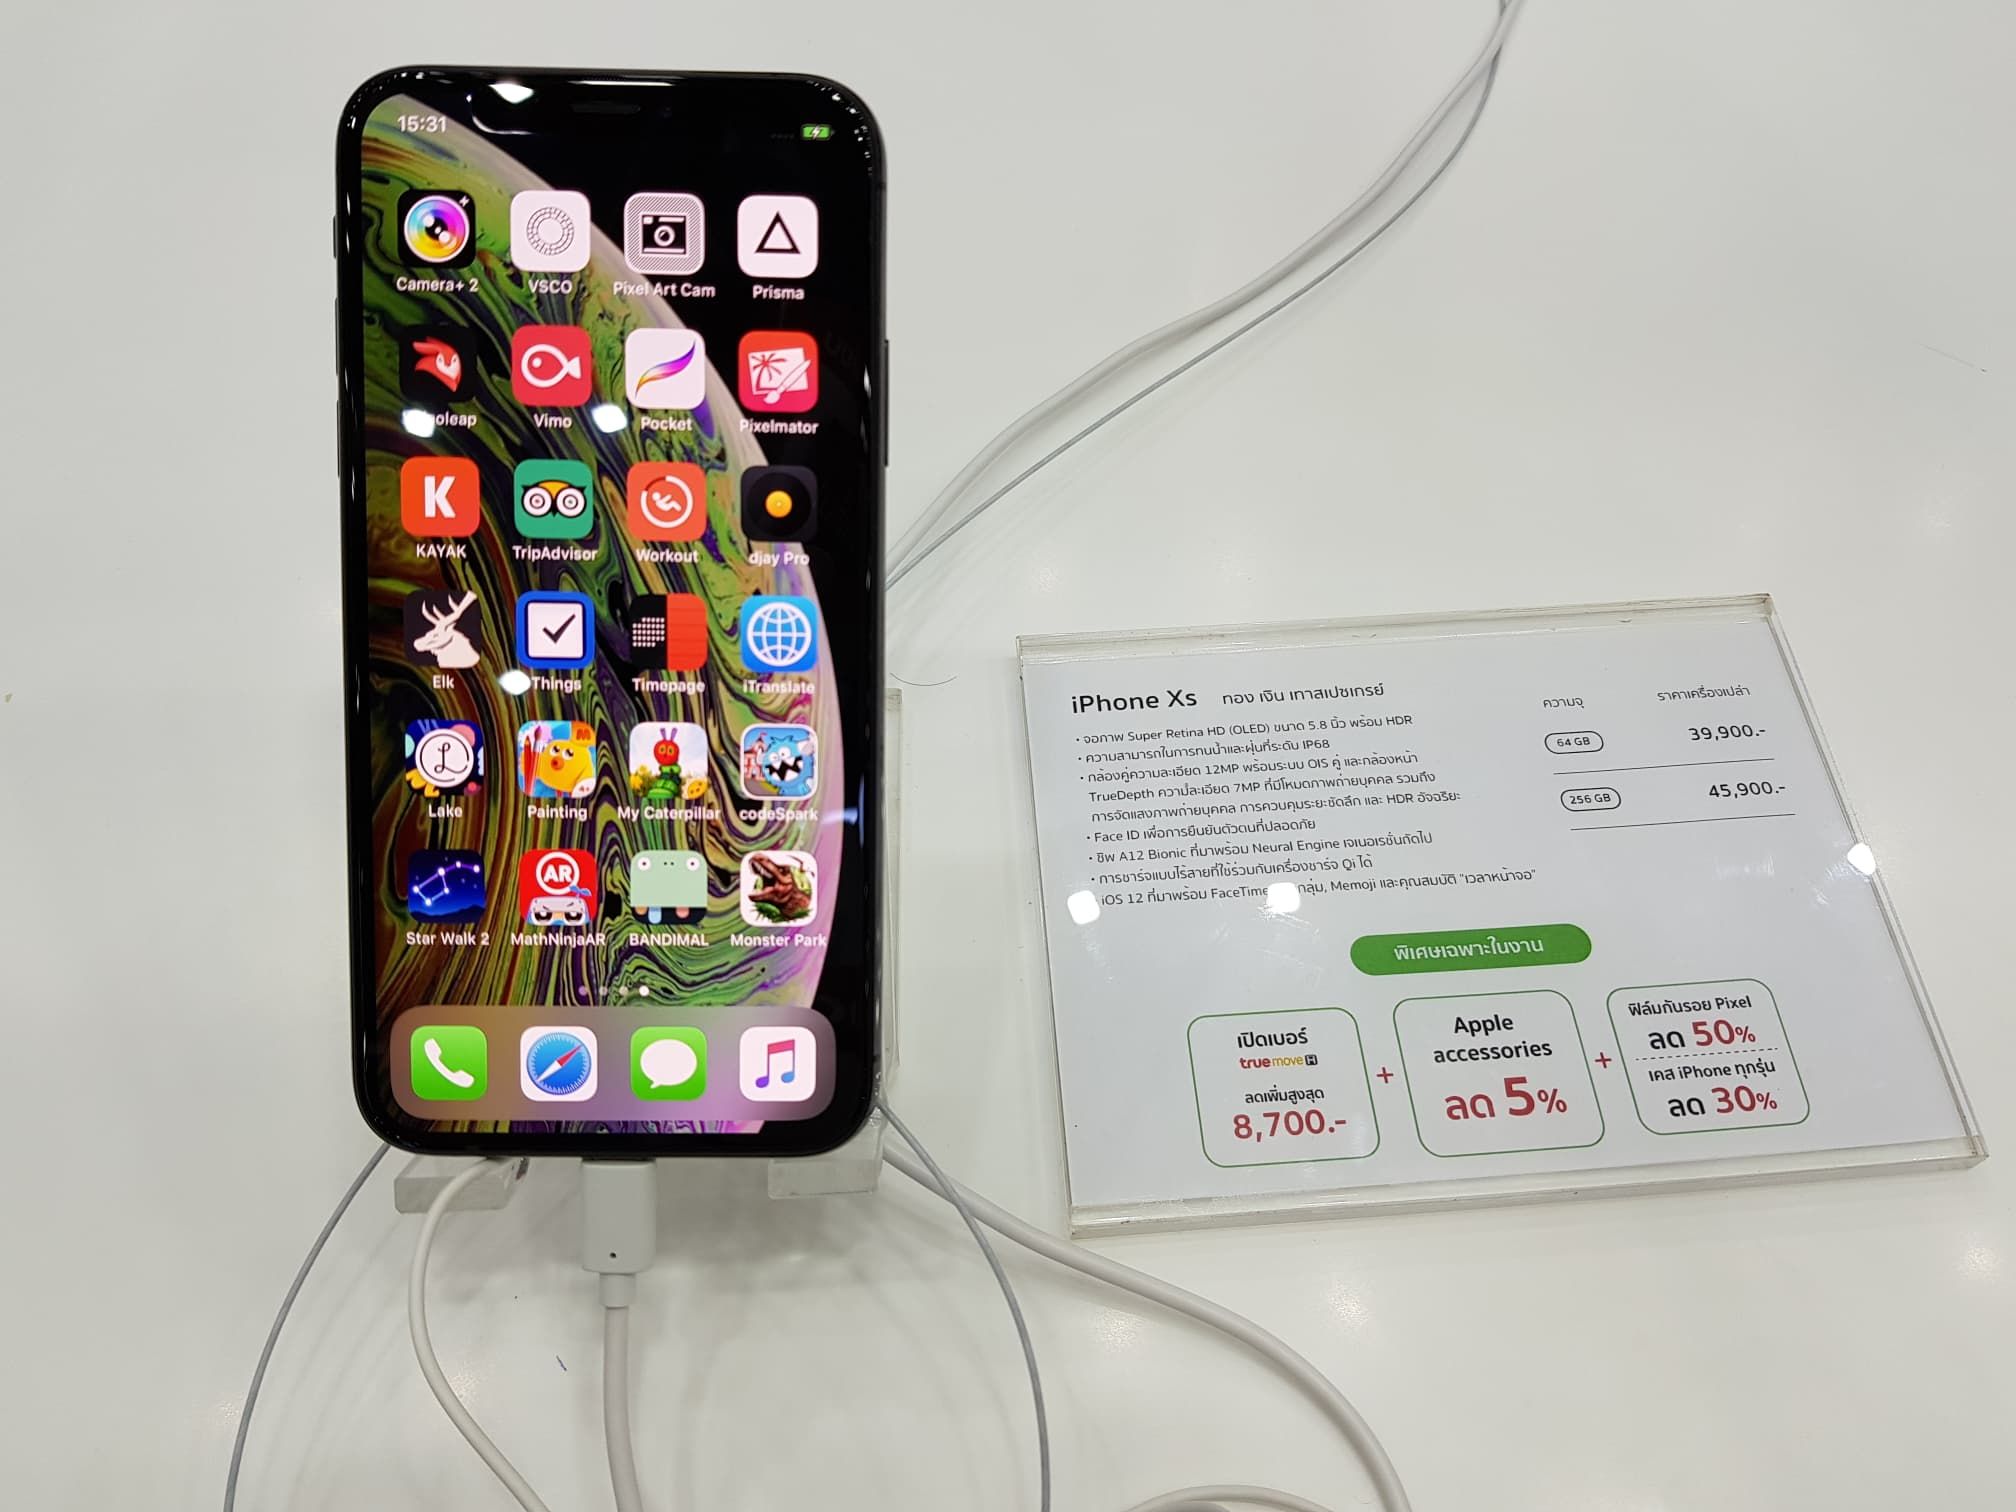 รวมโปรโมชั่น iPhone ลดราคากันดุเดือด ในงาน Mobile Expo ไบเทคบางนา เริ่มต้นแค่ 2,900 บาท